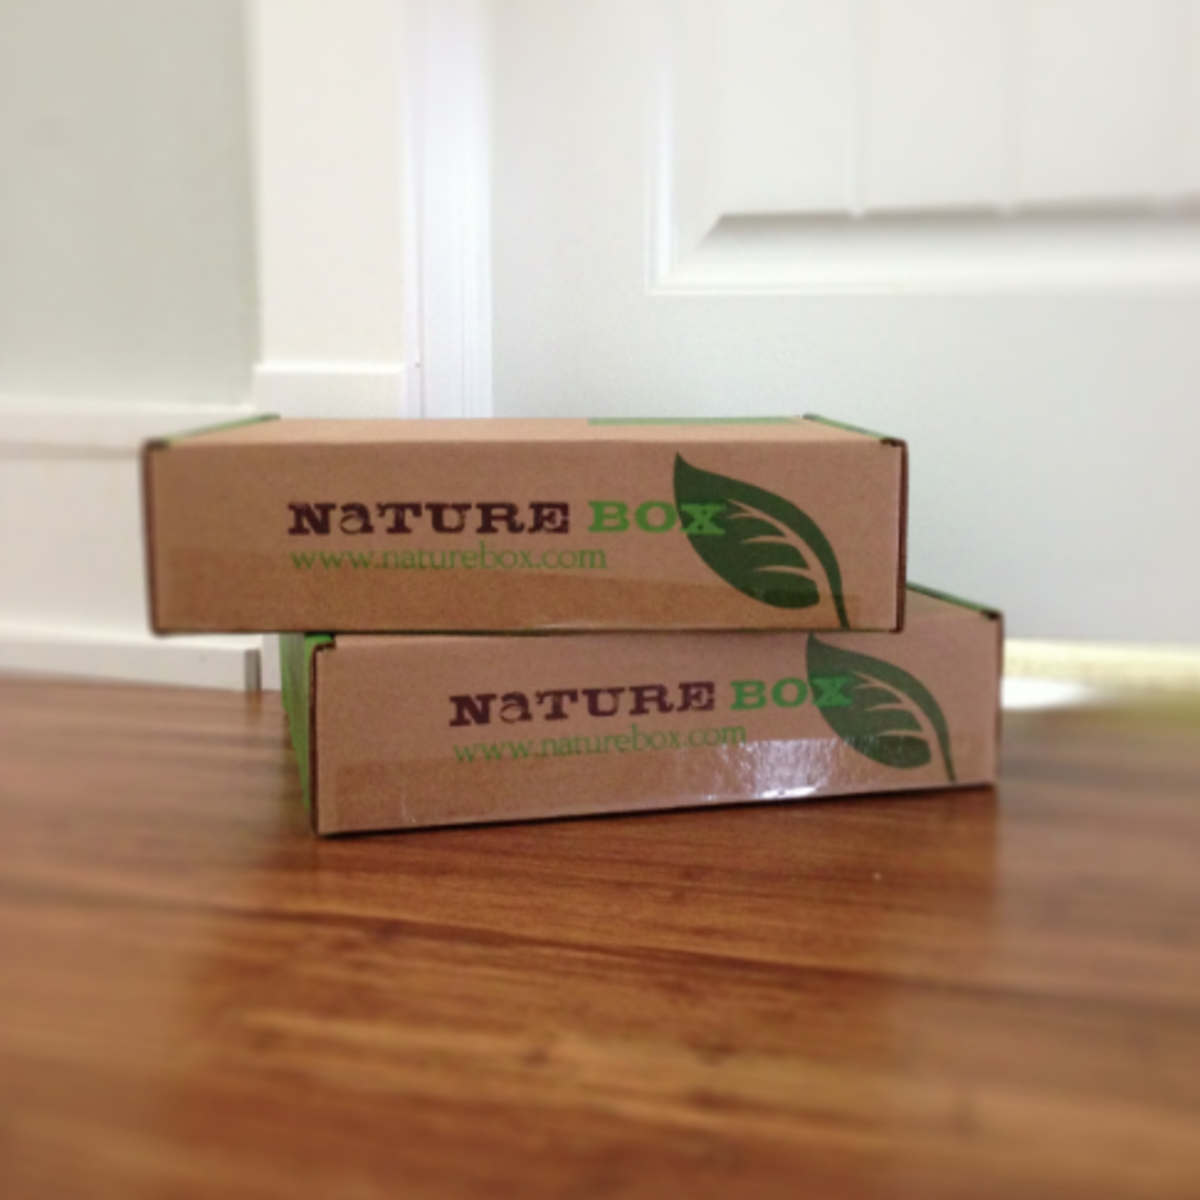 Nature Box Snacks